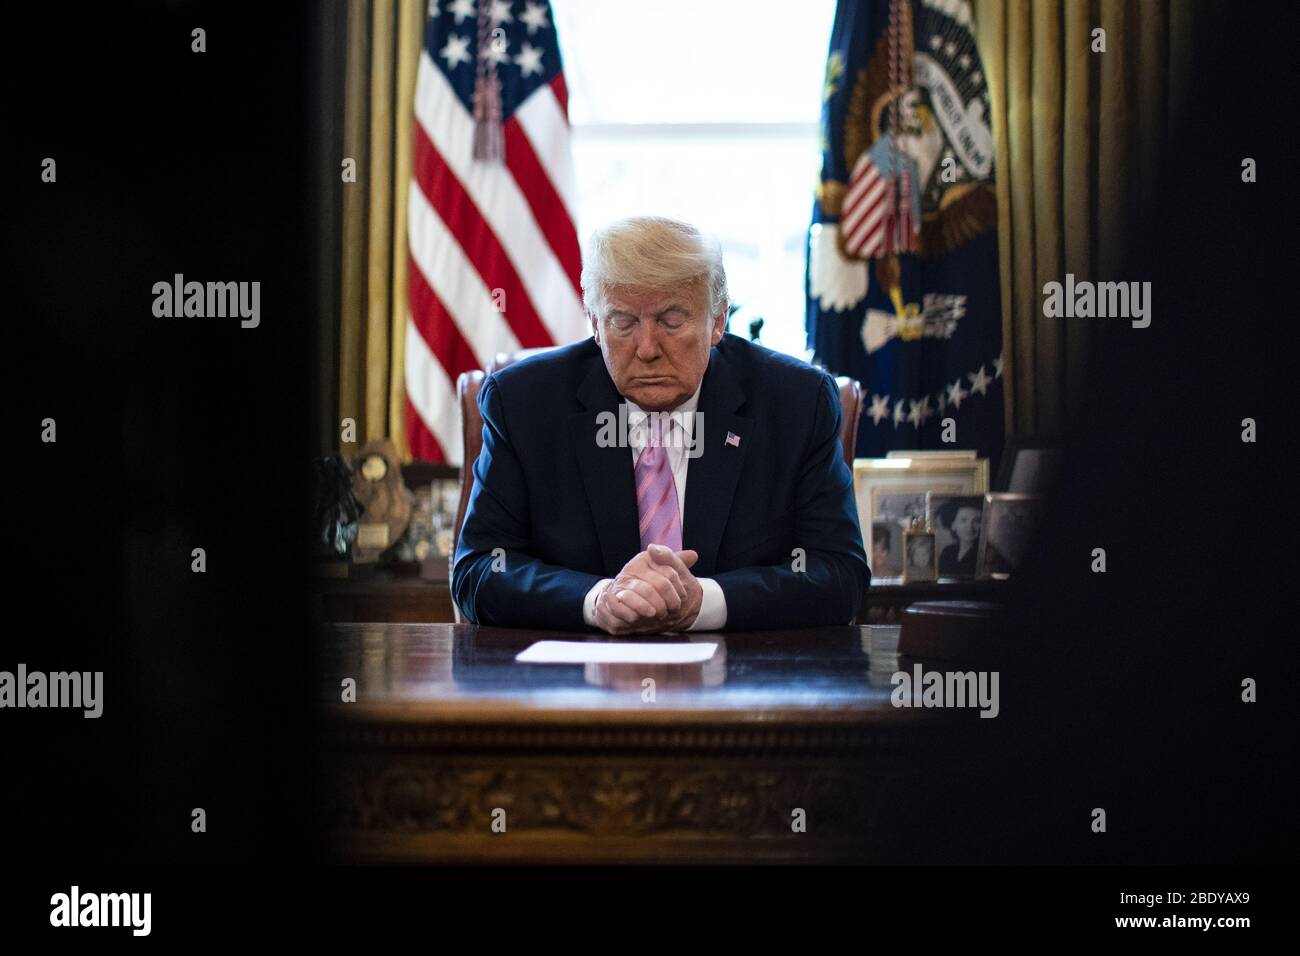 Washington, Stati Uniti. 10 aprile 2020. Il Presidente Donald Trump partecipa a una benedizione pasquale presso l’Ufficio ovale della Casa Bianca venerdì 10 aprile 2020 a Washington. Foto di al Drago Credit: UPI/Alamy Live News Foto Stock